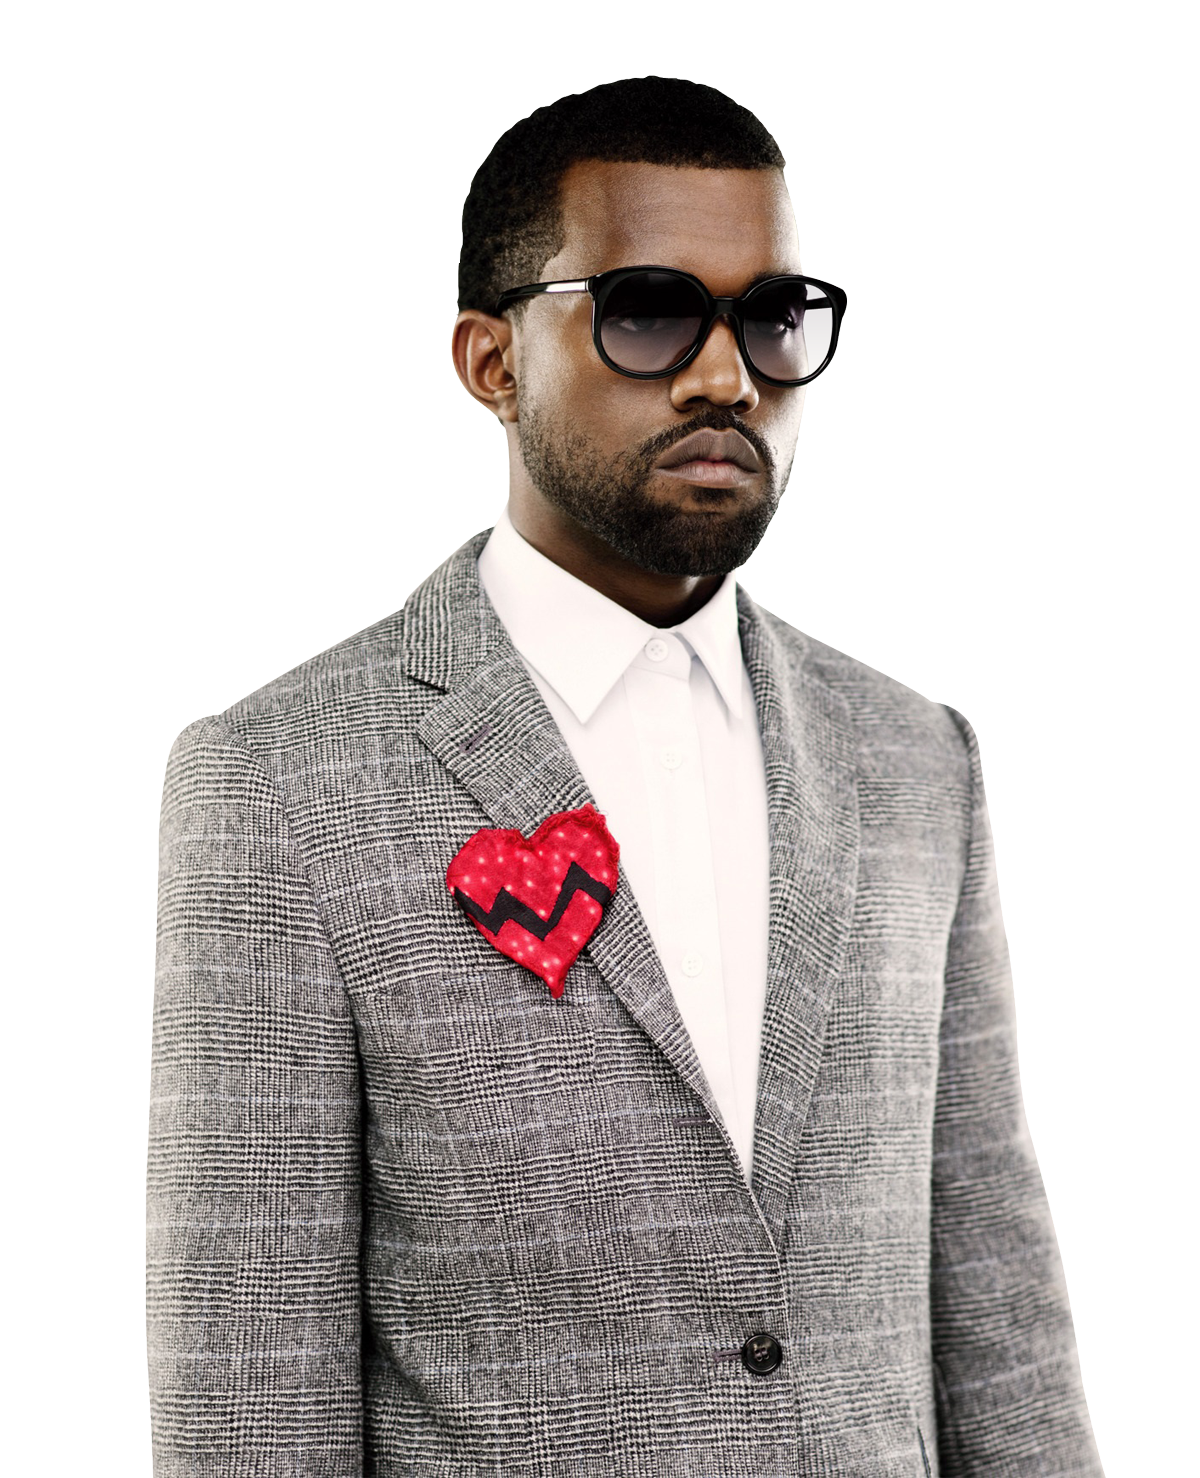 Ye Kanye West Rapper PNG Foto HQ